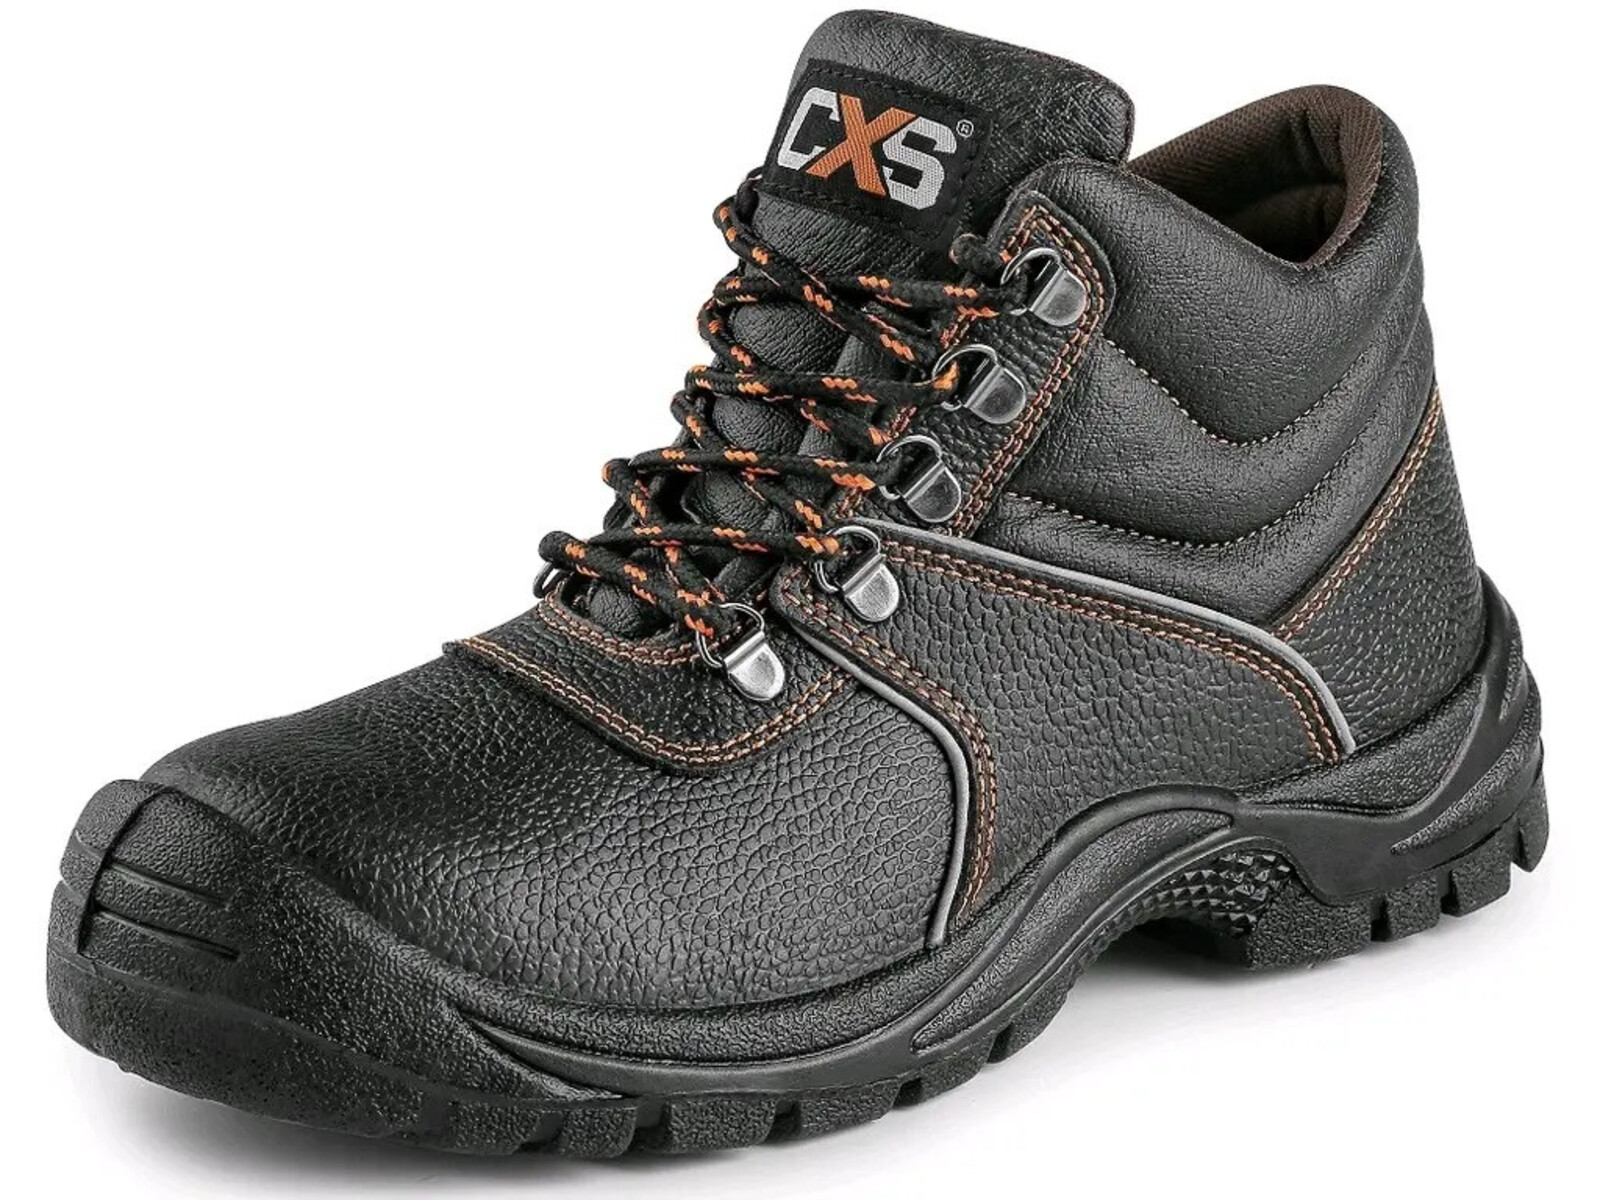 Bezpečnostná členková obuv CXS Stone Marble S2 SRC - veľkosť: 41, farba: čierna/oranžová